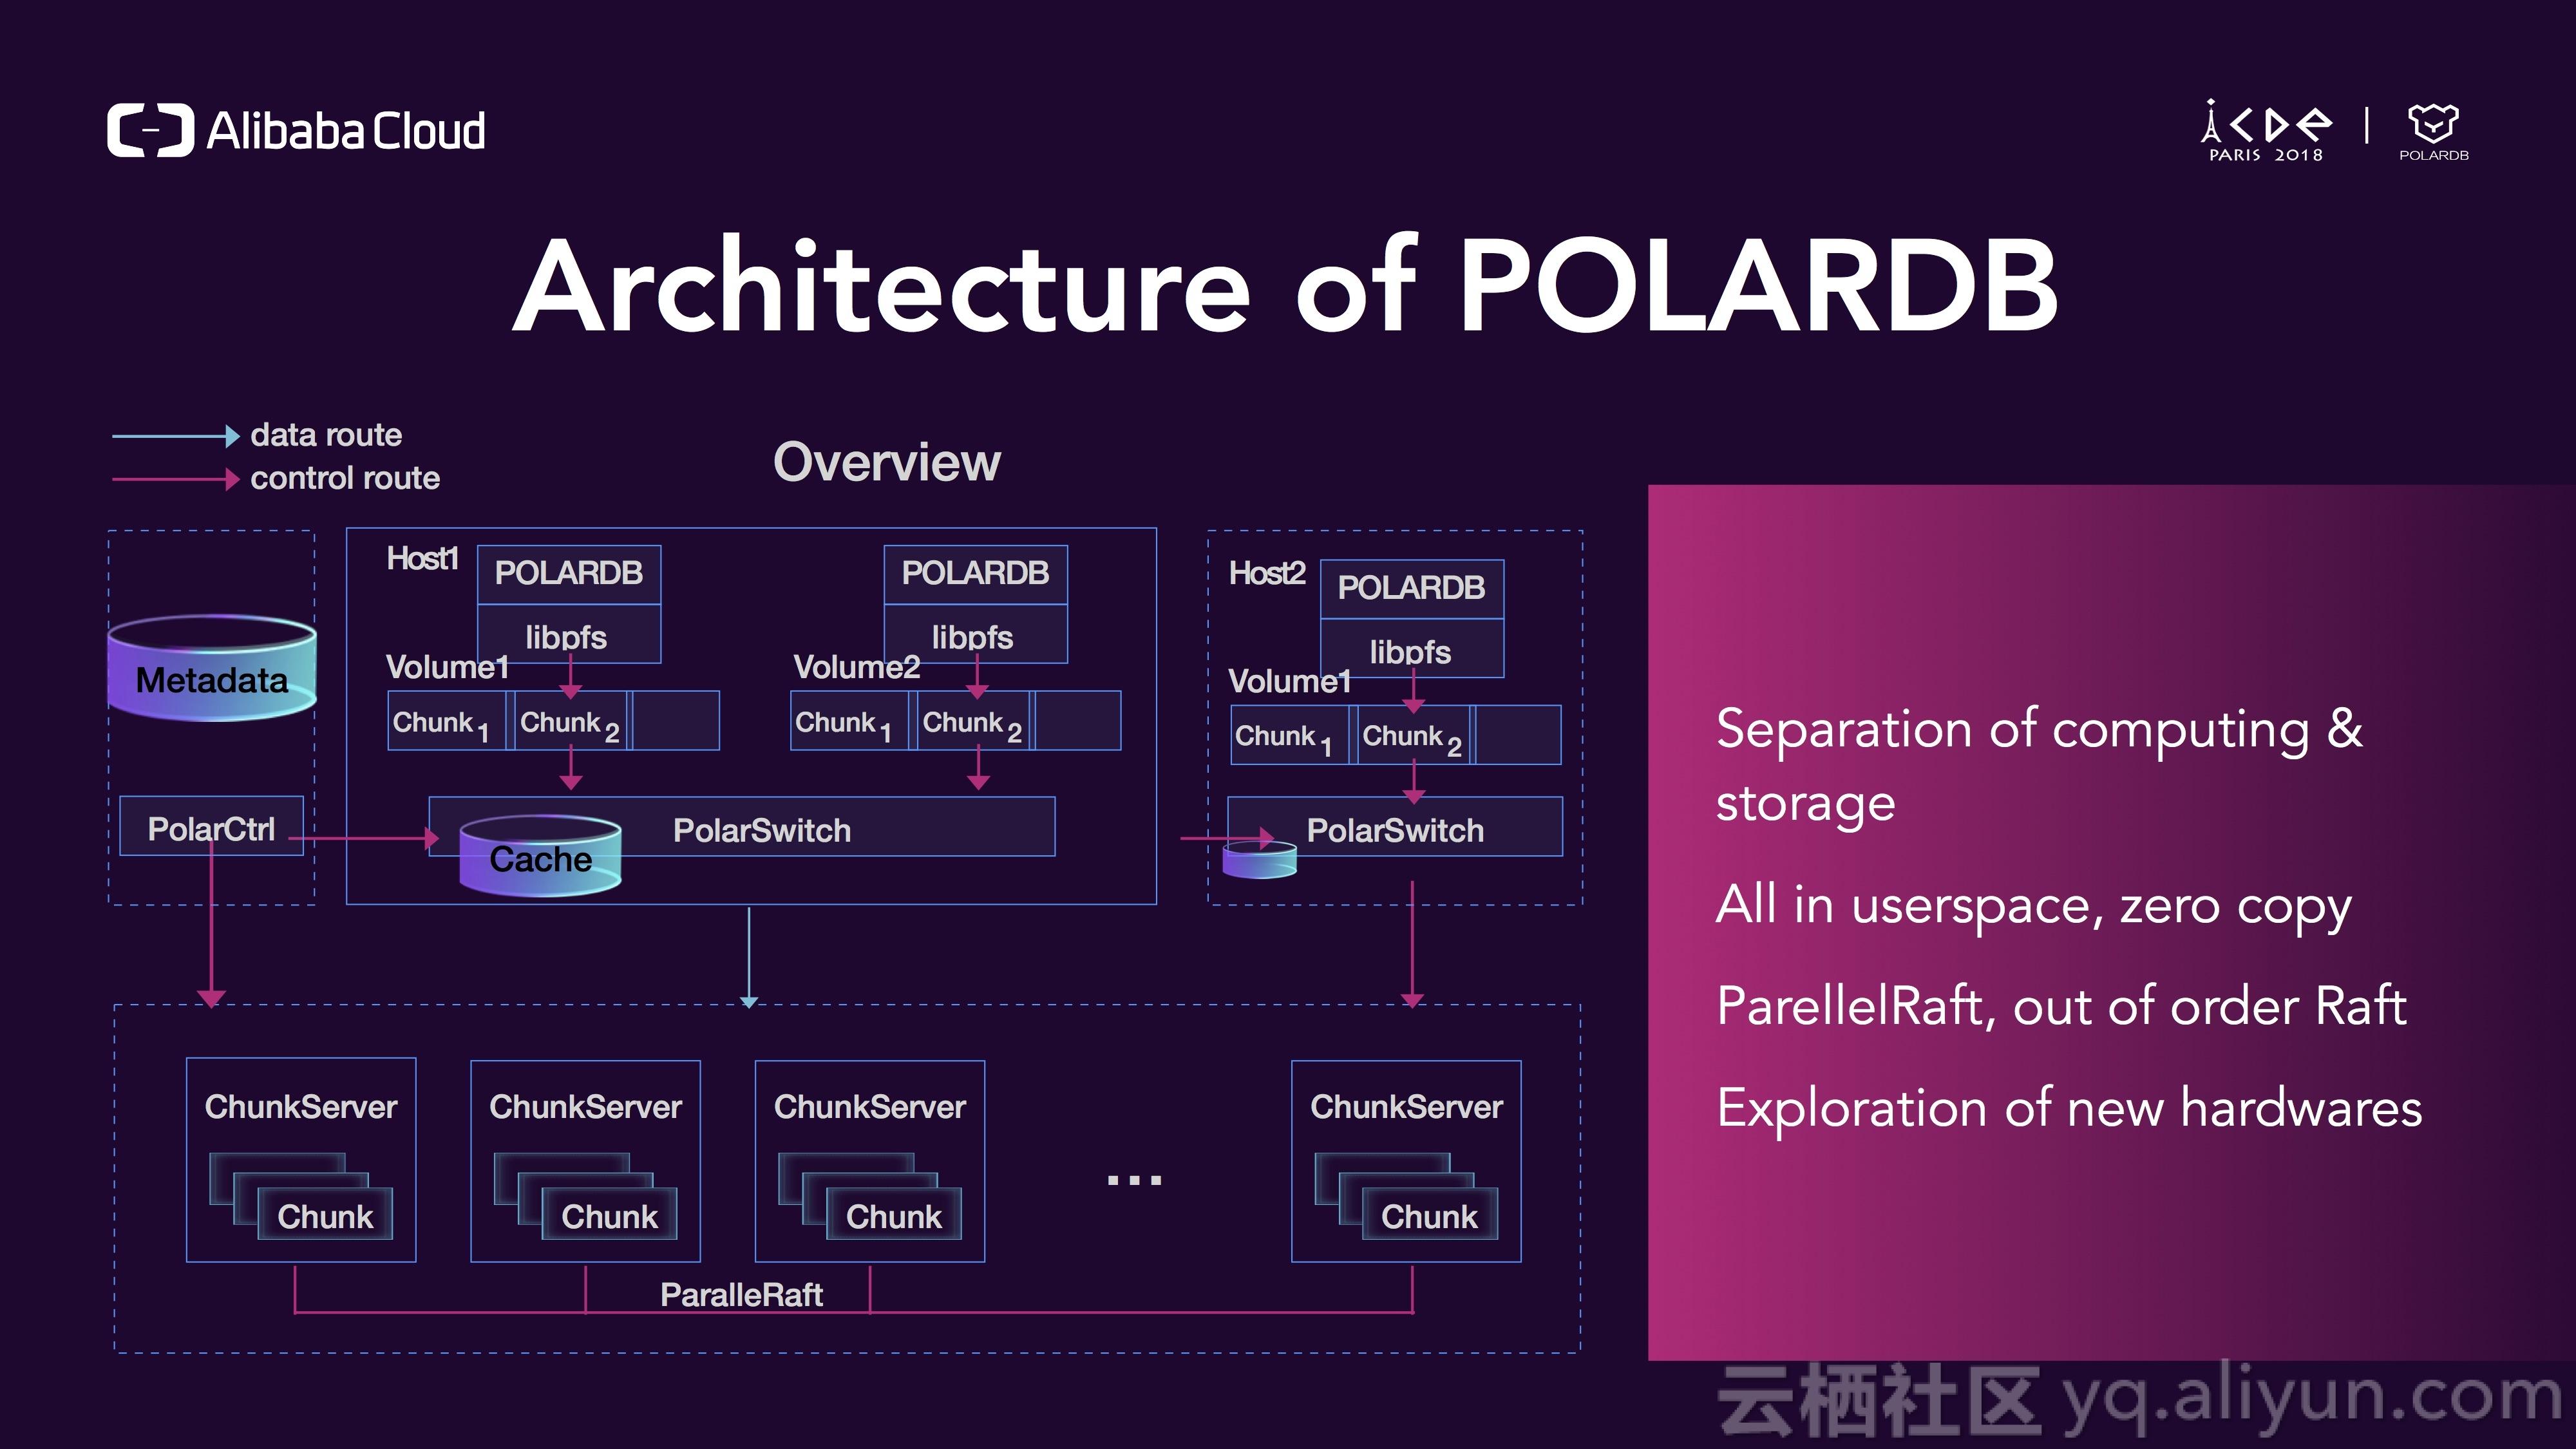 这是一个polardb的架构大图,上层是计算层,下层的存